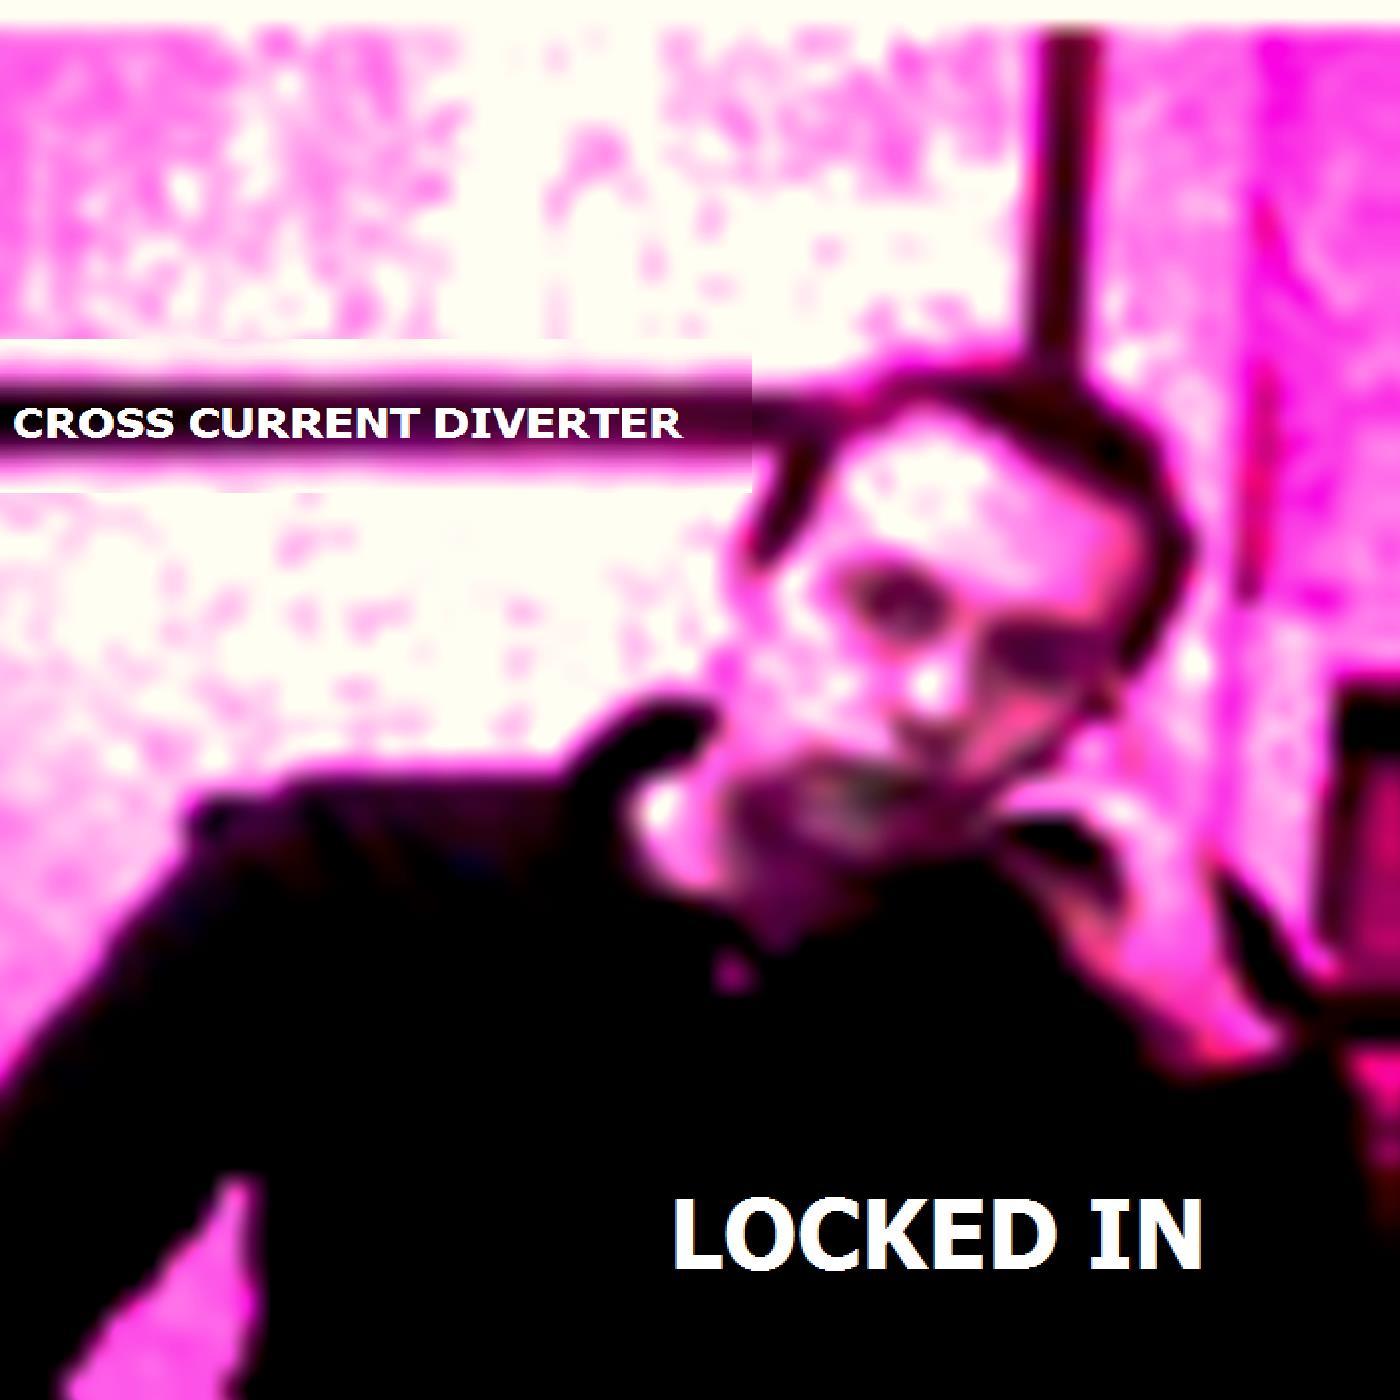 Locked in